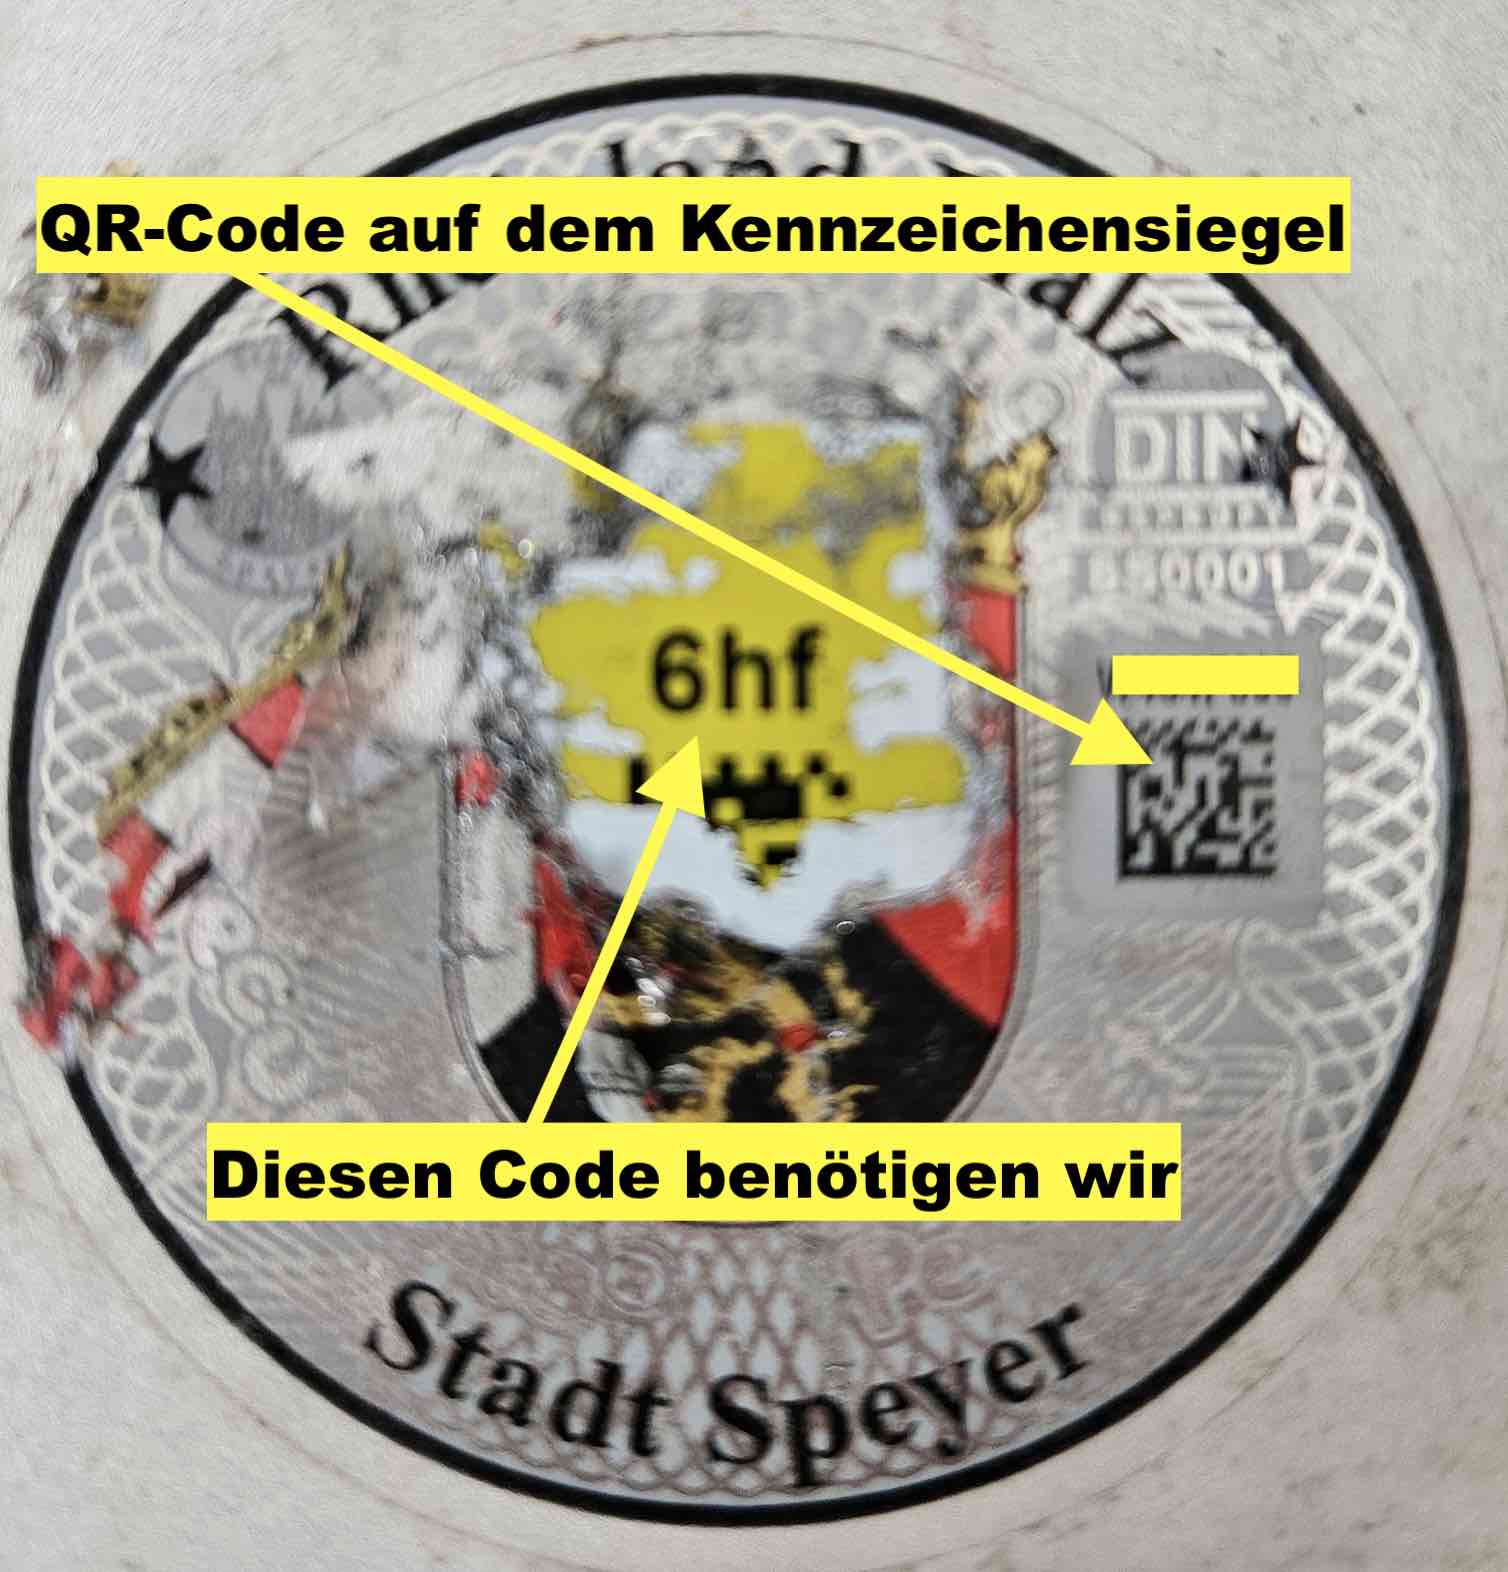 Kennzeichensiegel mit einem QR-Code aus Stadt Speyer - Beispielbild